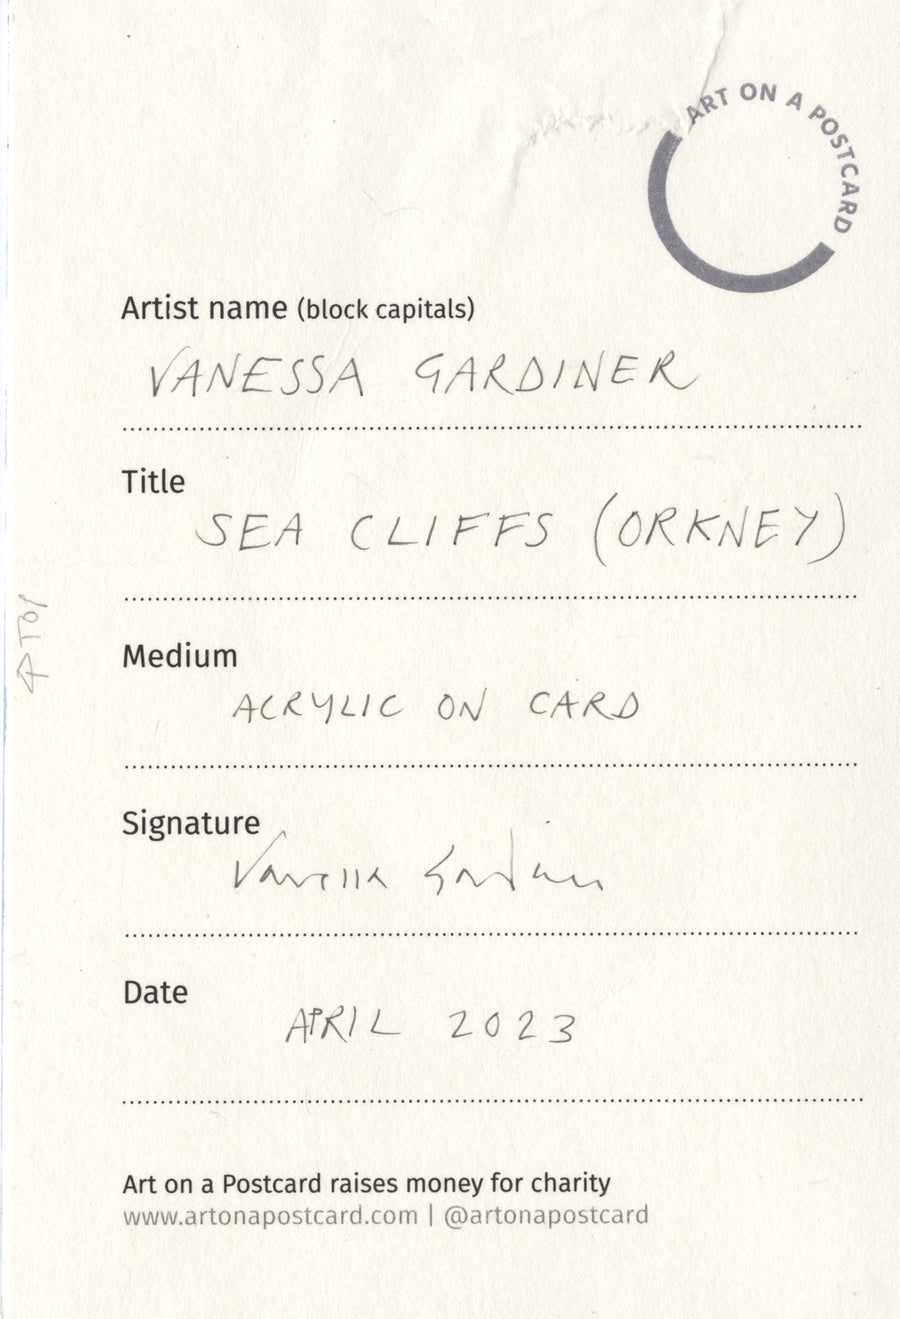 Lot 123 - Vanessa Gardiner - Sea Cliffs (Orkney)